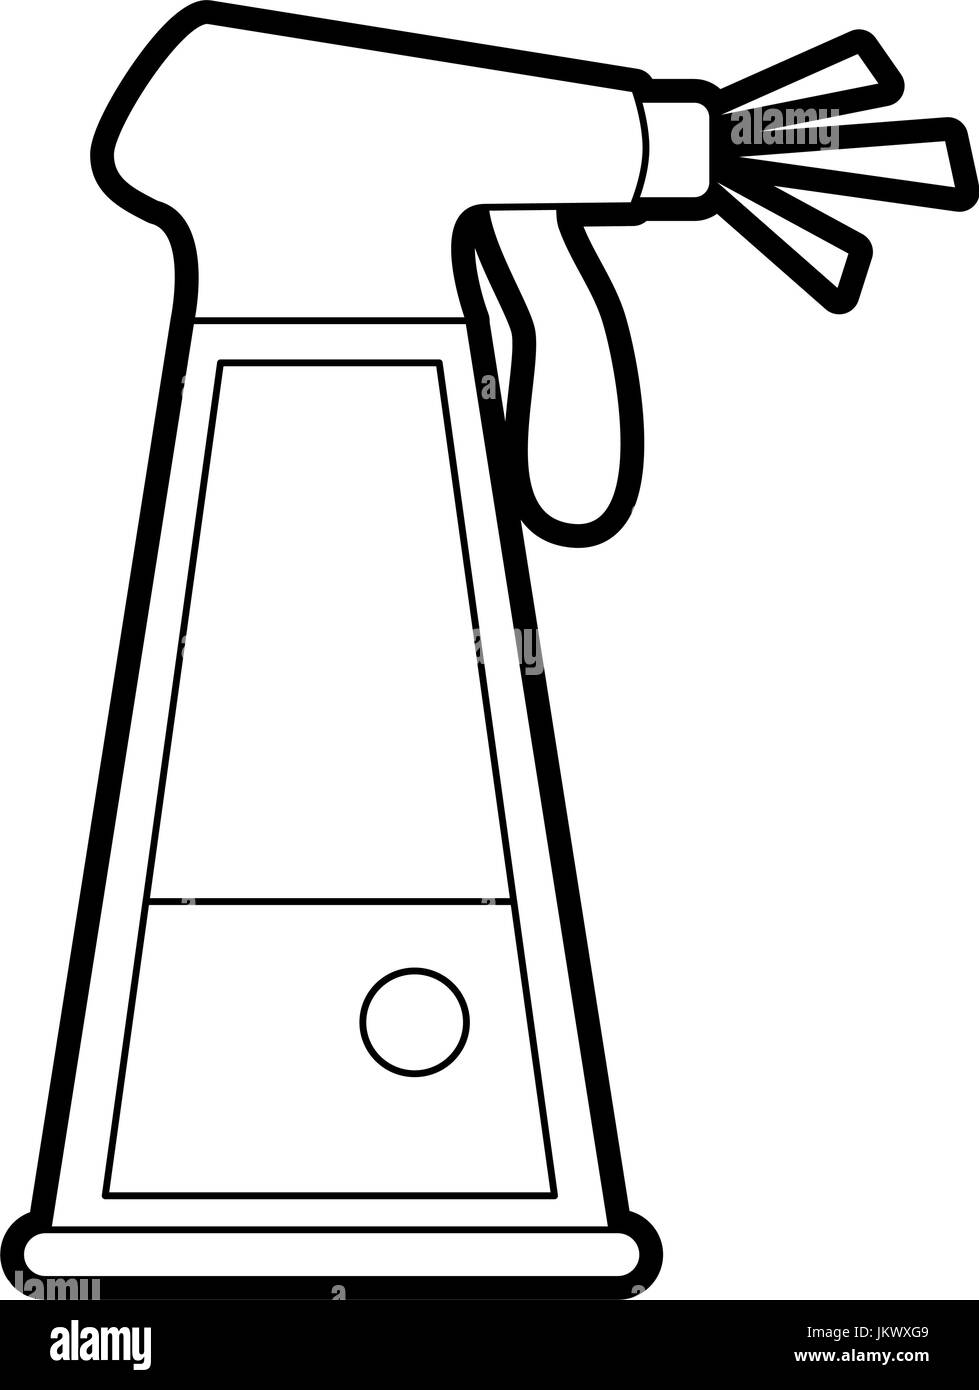 Wasser in Spray Flasche Symbolbild Stock Vektor